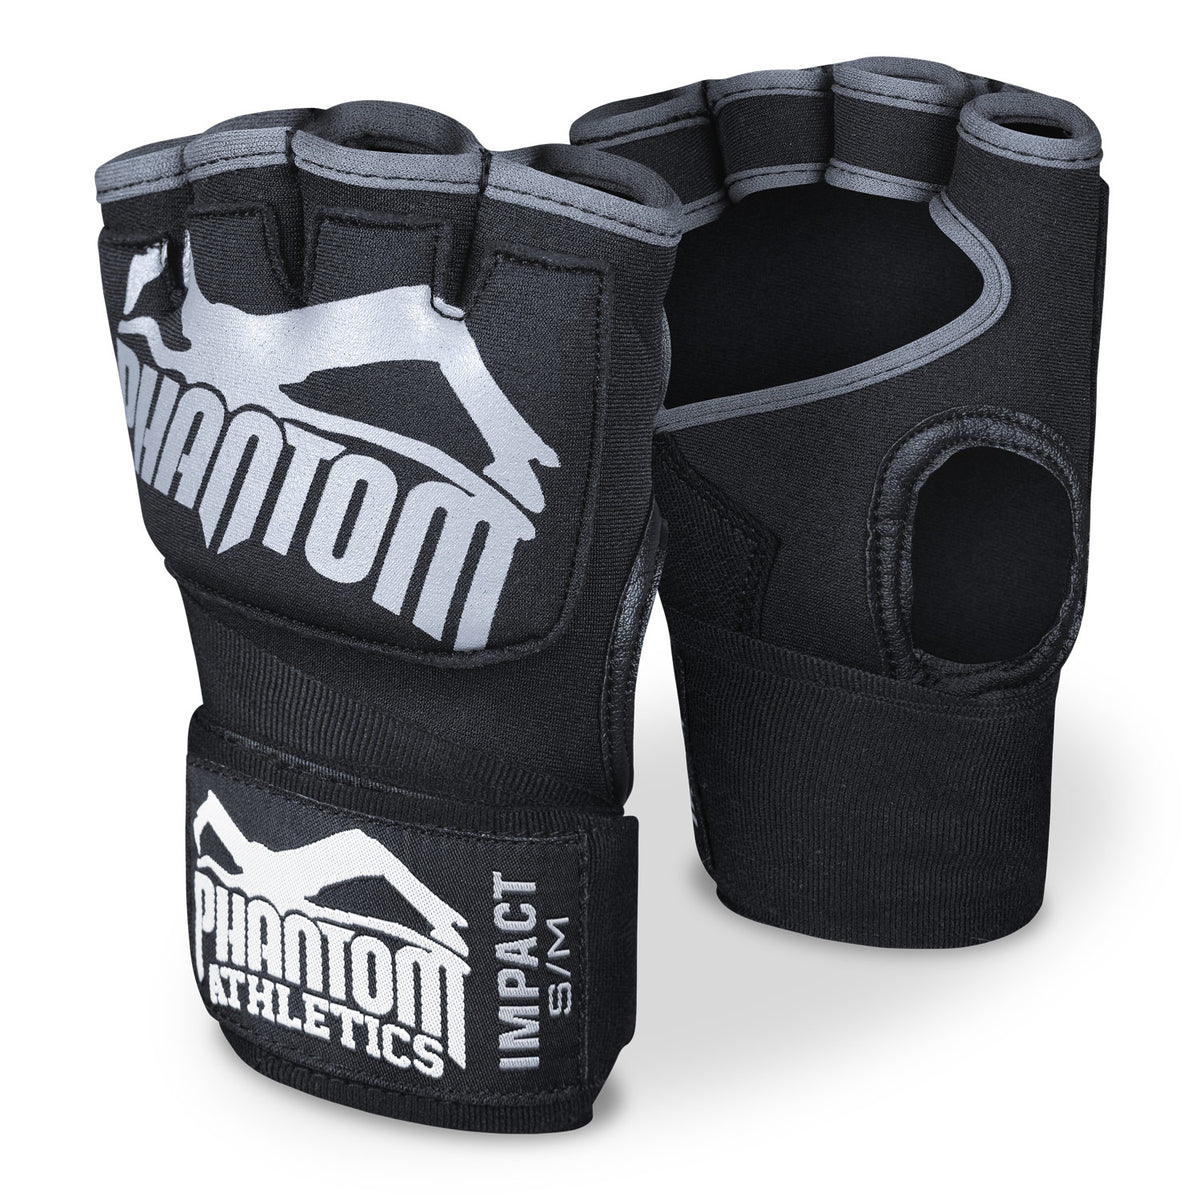 Phantom bokso tvarsčiai Impact su geliniu užpildu. Daugiau apsaugos jūsų kovos menų treniruotėse.